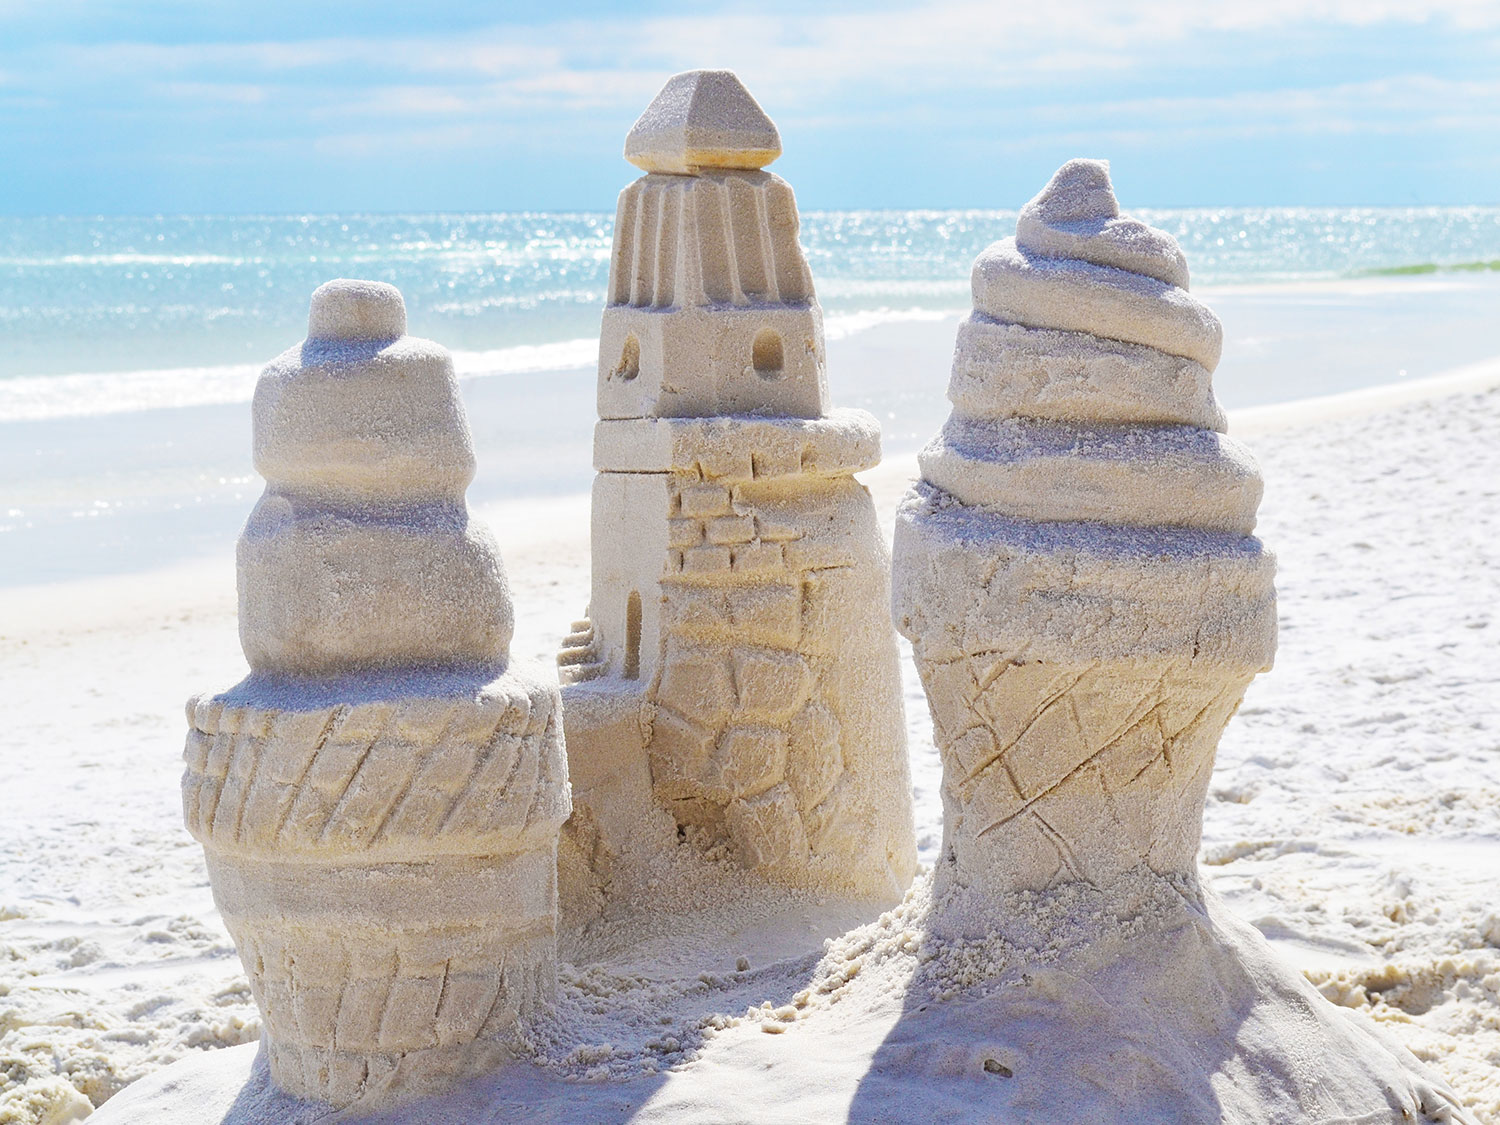 Sand sculptures built on the beach